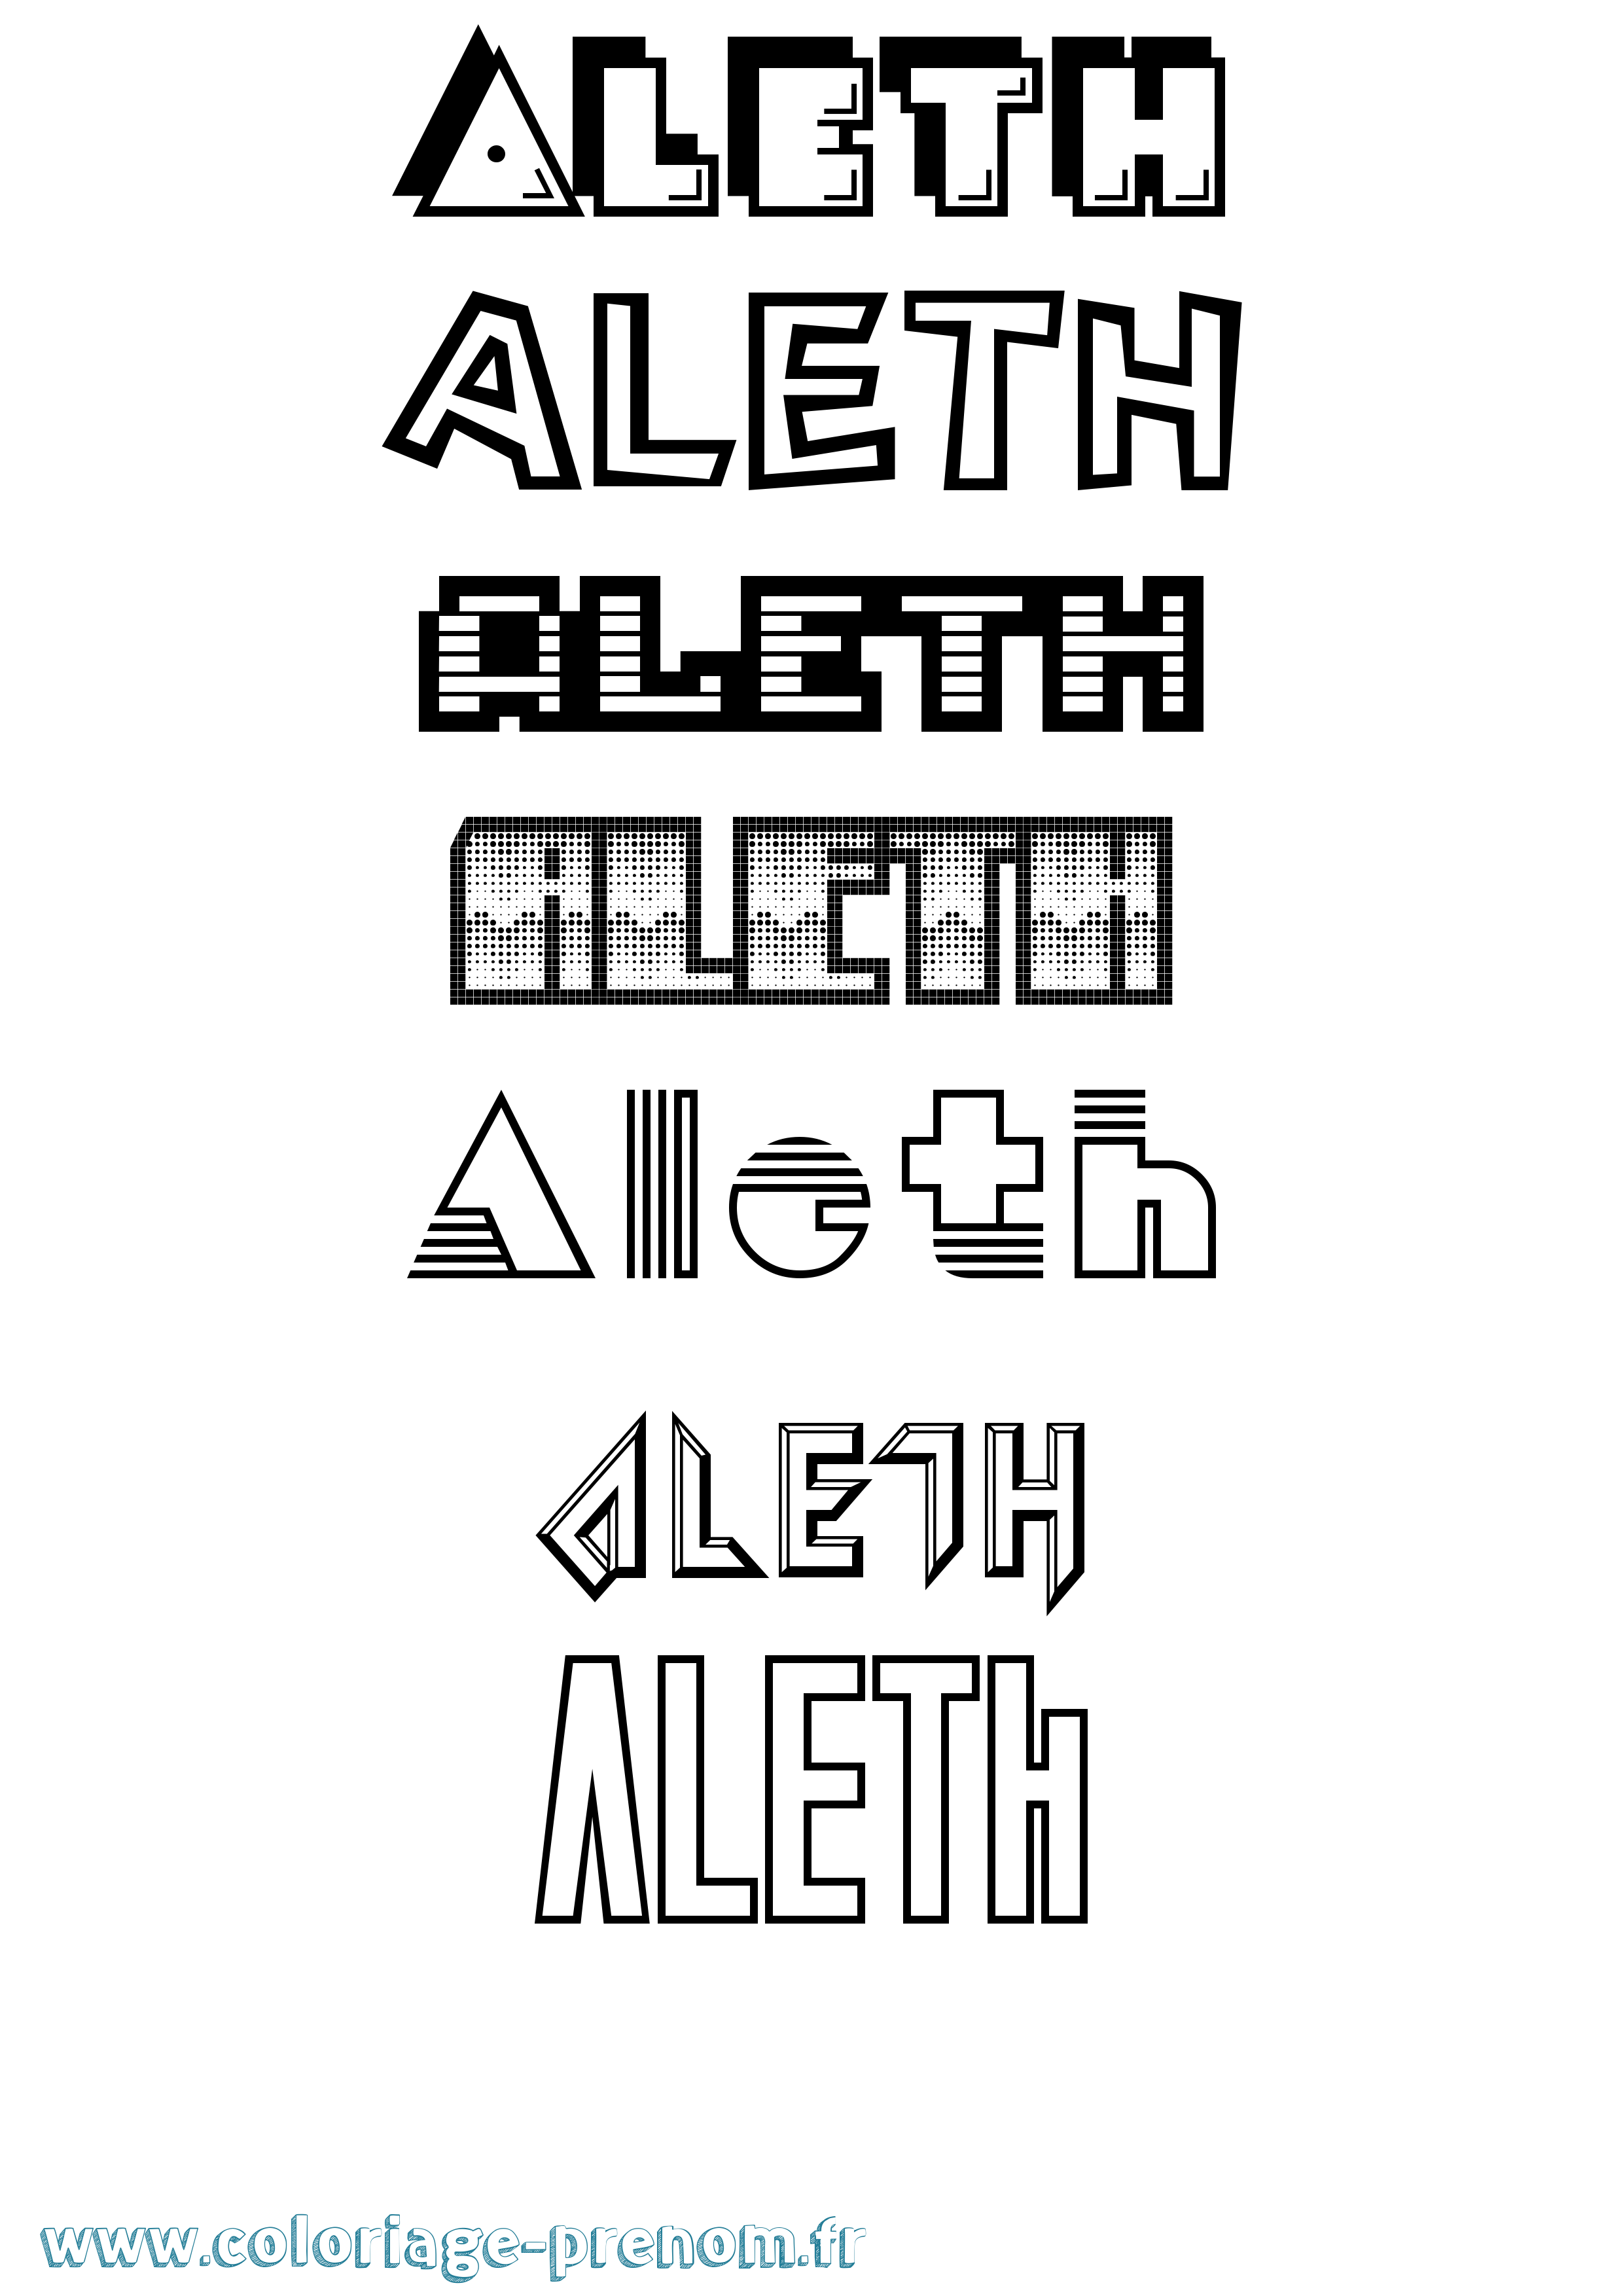 Coloriage prénom Aleth Jeux Vidéos